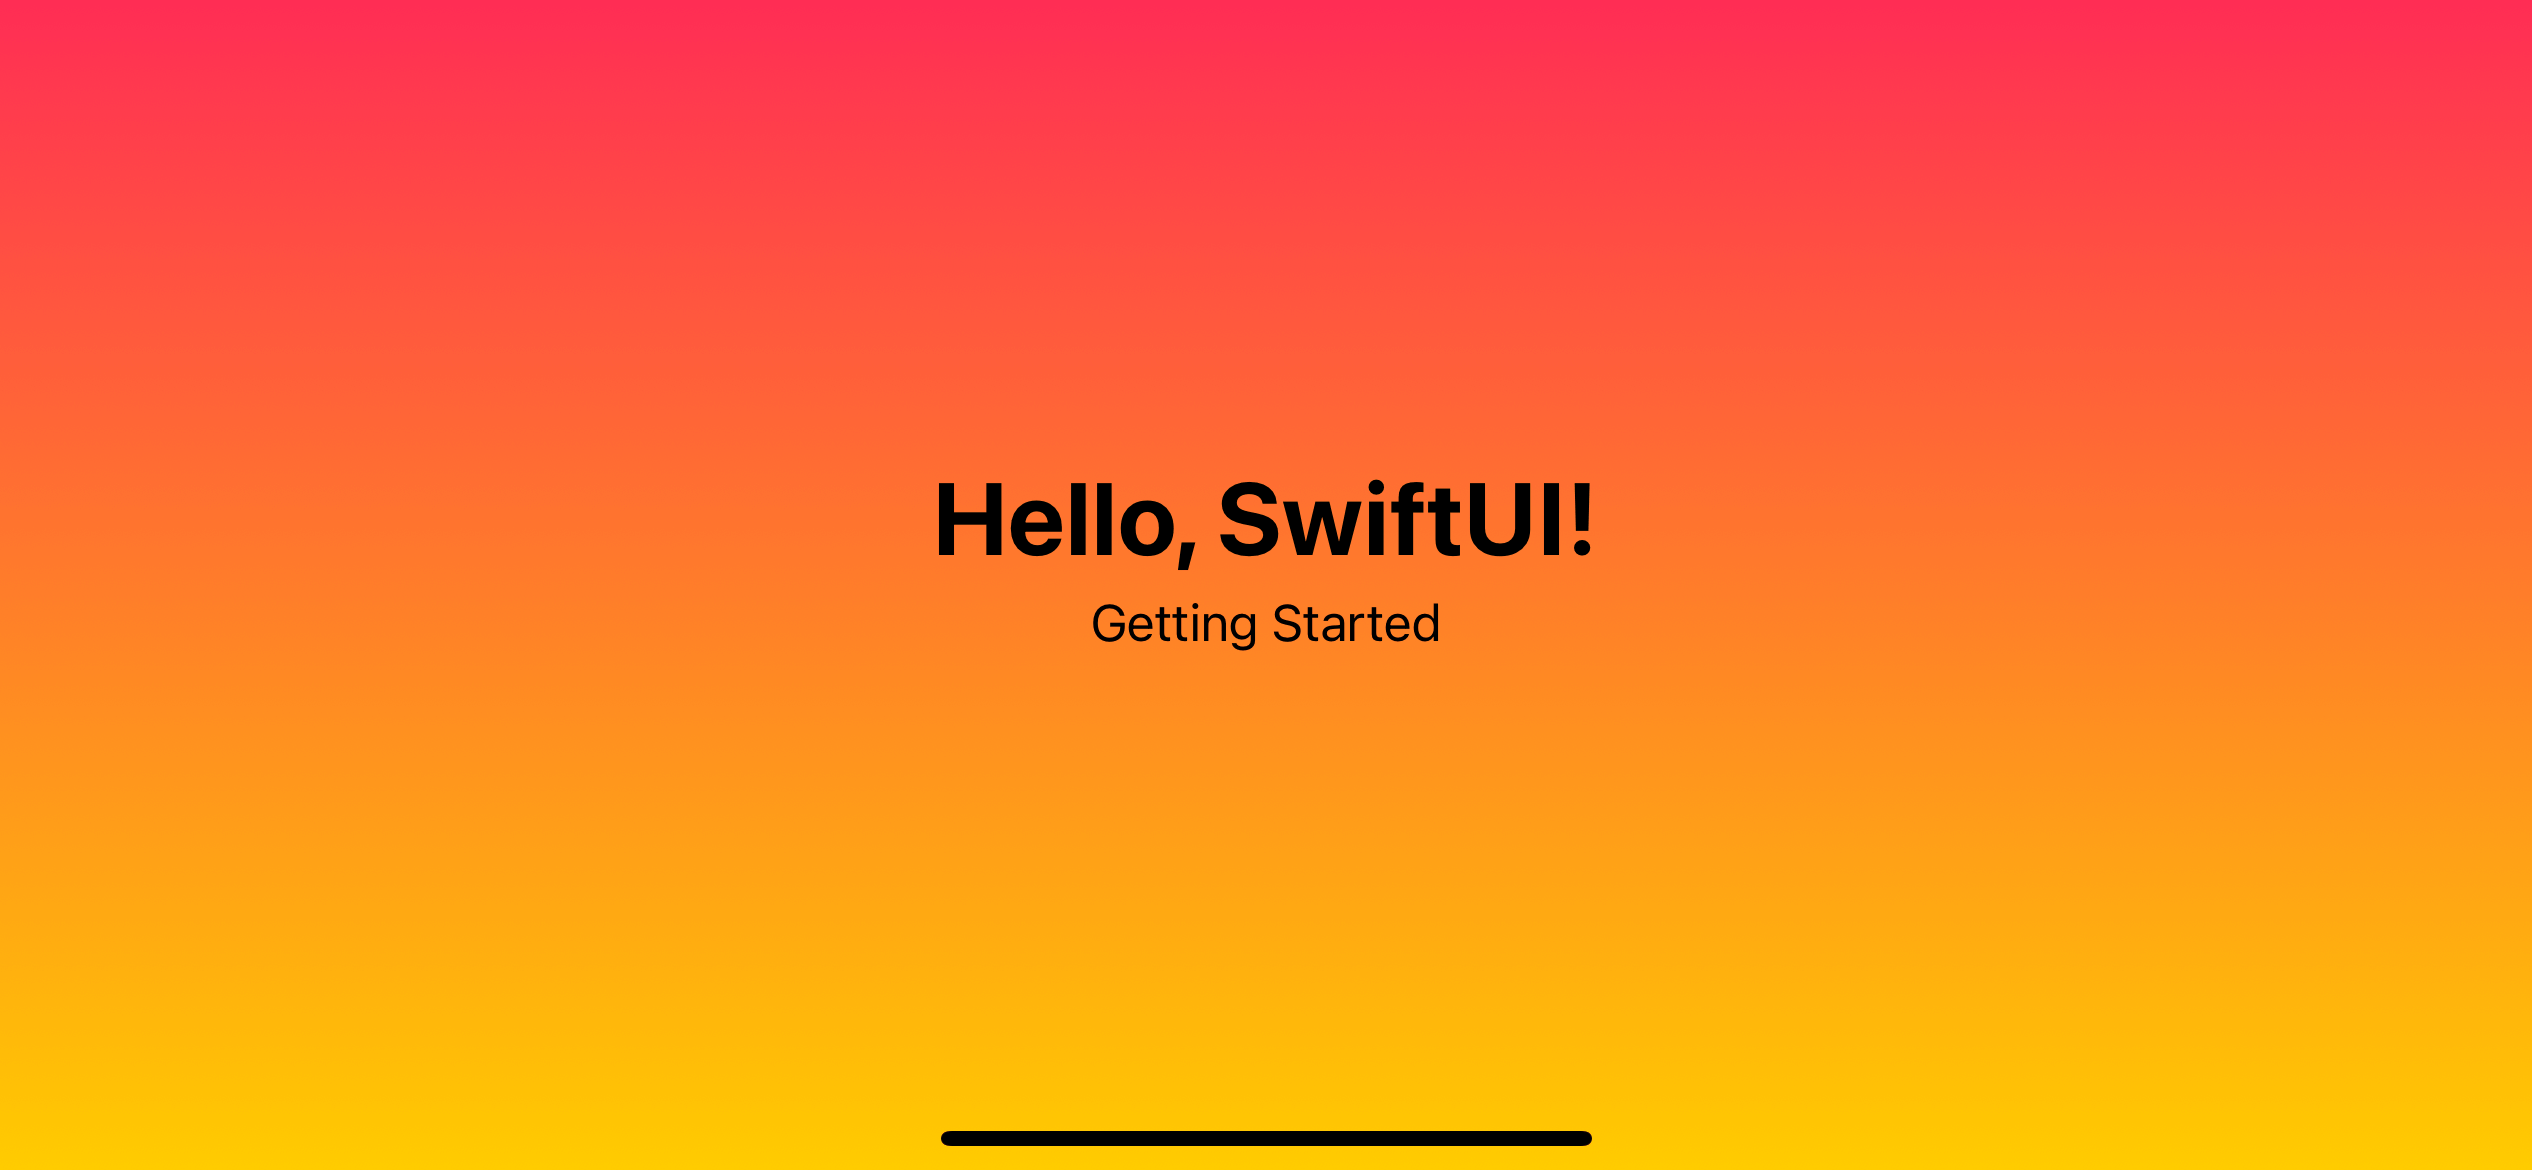 SwiftUI: Bạn yêu thích lập trình và đang muốn thử sức với ứng dụng di động? SwiftUI là một khái niệm bạn không thể bỏ qua. Nhấp chuột vào bức ảnh liên quan để khám phá khả năng tuyệt diệu của SwiftUI, nền tảng lập trình giúp bạn tạo ra ứng dụng siêu tuyệt vời trên nền tảng iOS.